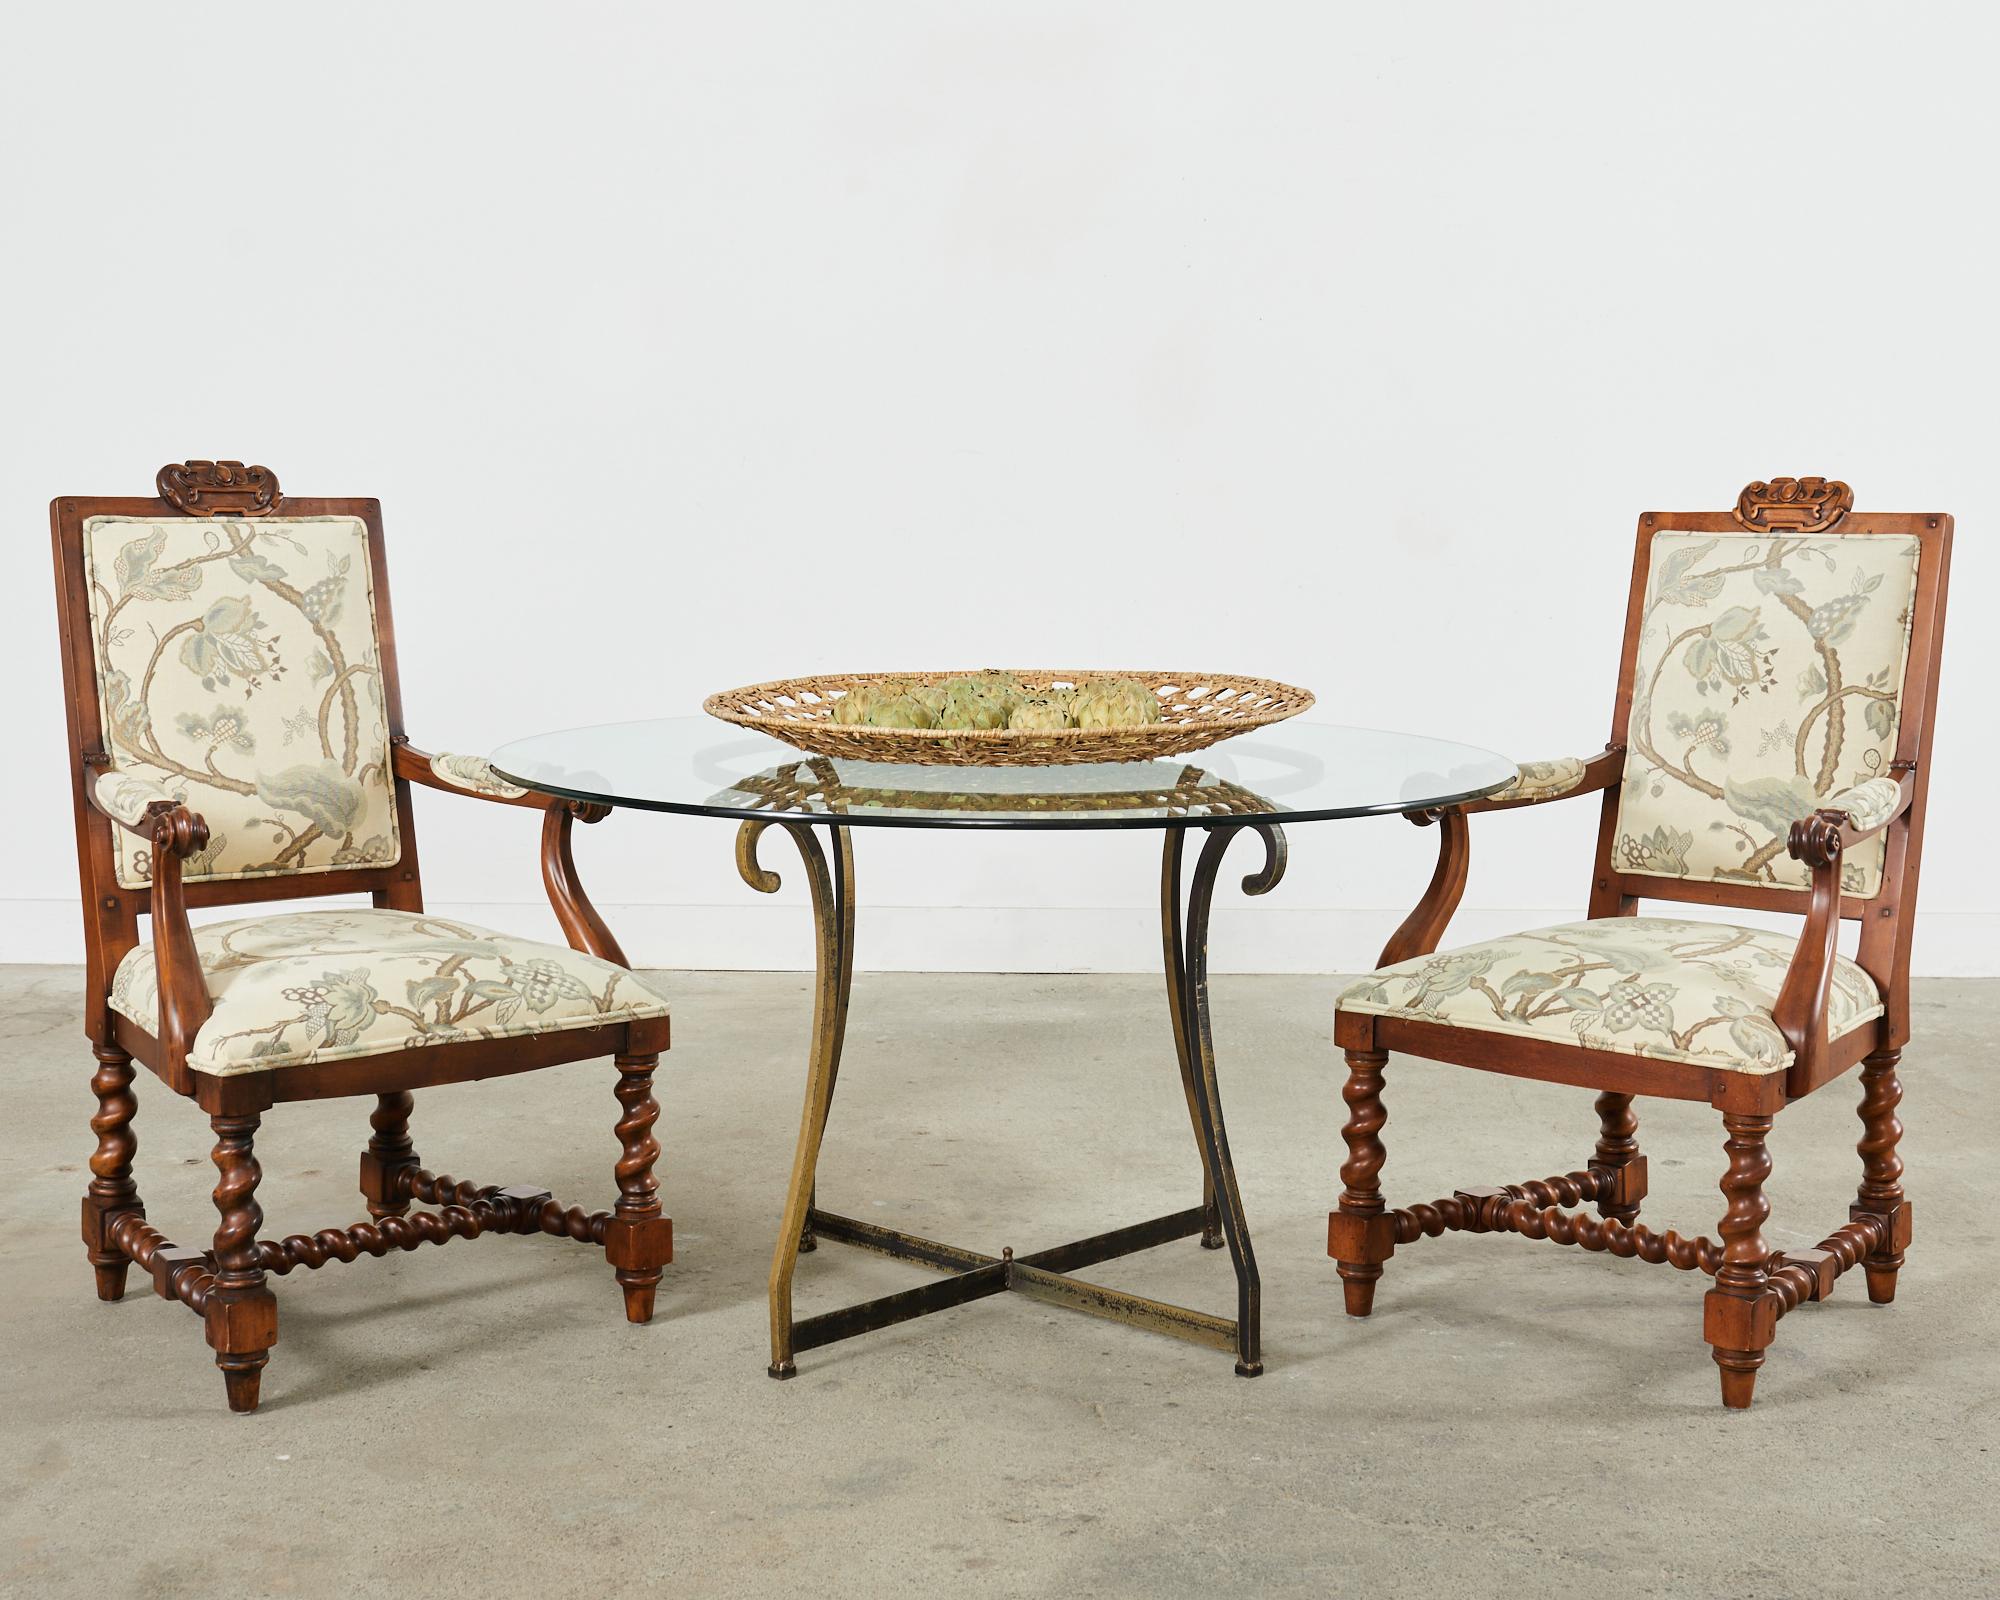 Imposanter Satz von acht handgeschnitzten Esszimmerstühlen im Barockstil, entworfen von Ralph Lauren für Henredon. Die Stühle sind aus Obstholz und Ahorn gefertigt. Das Set besteht aus sechs Beistellstühlen und zwei Host-Sesseln mit einer Breite von